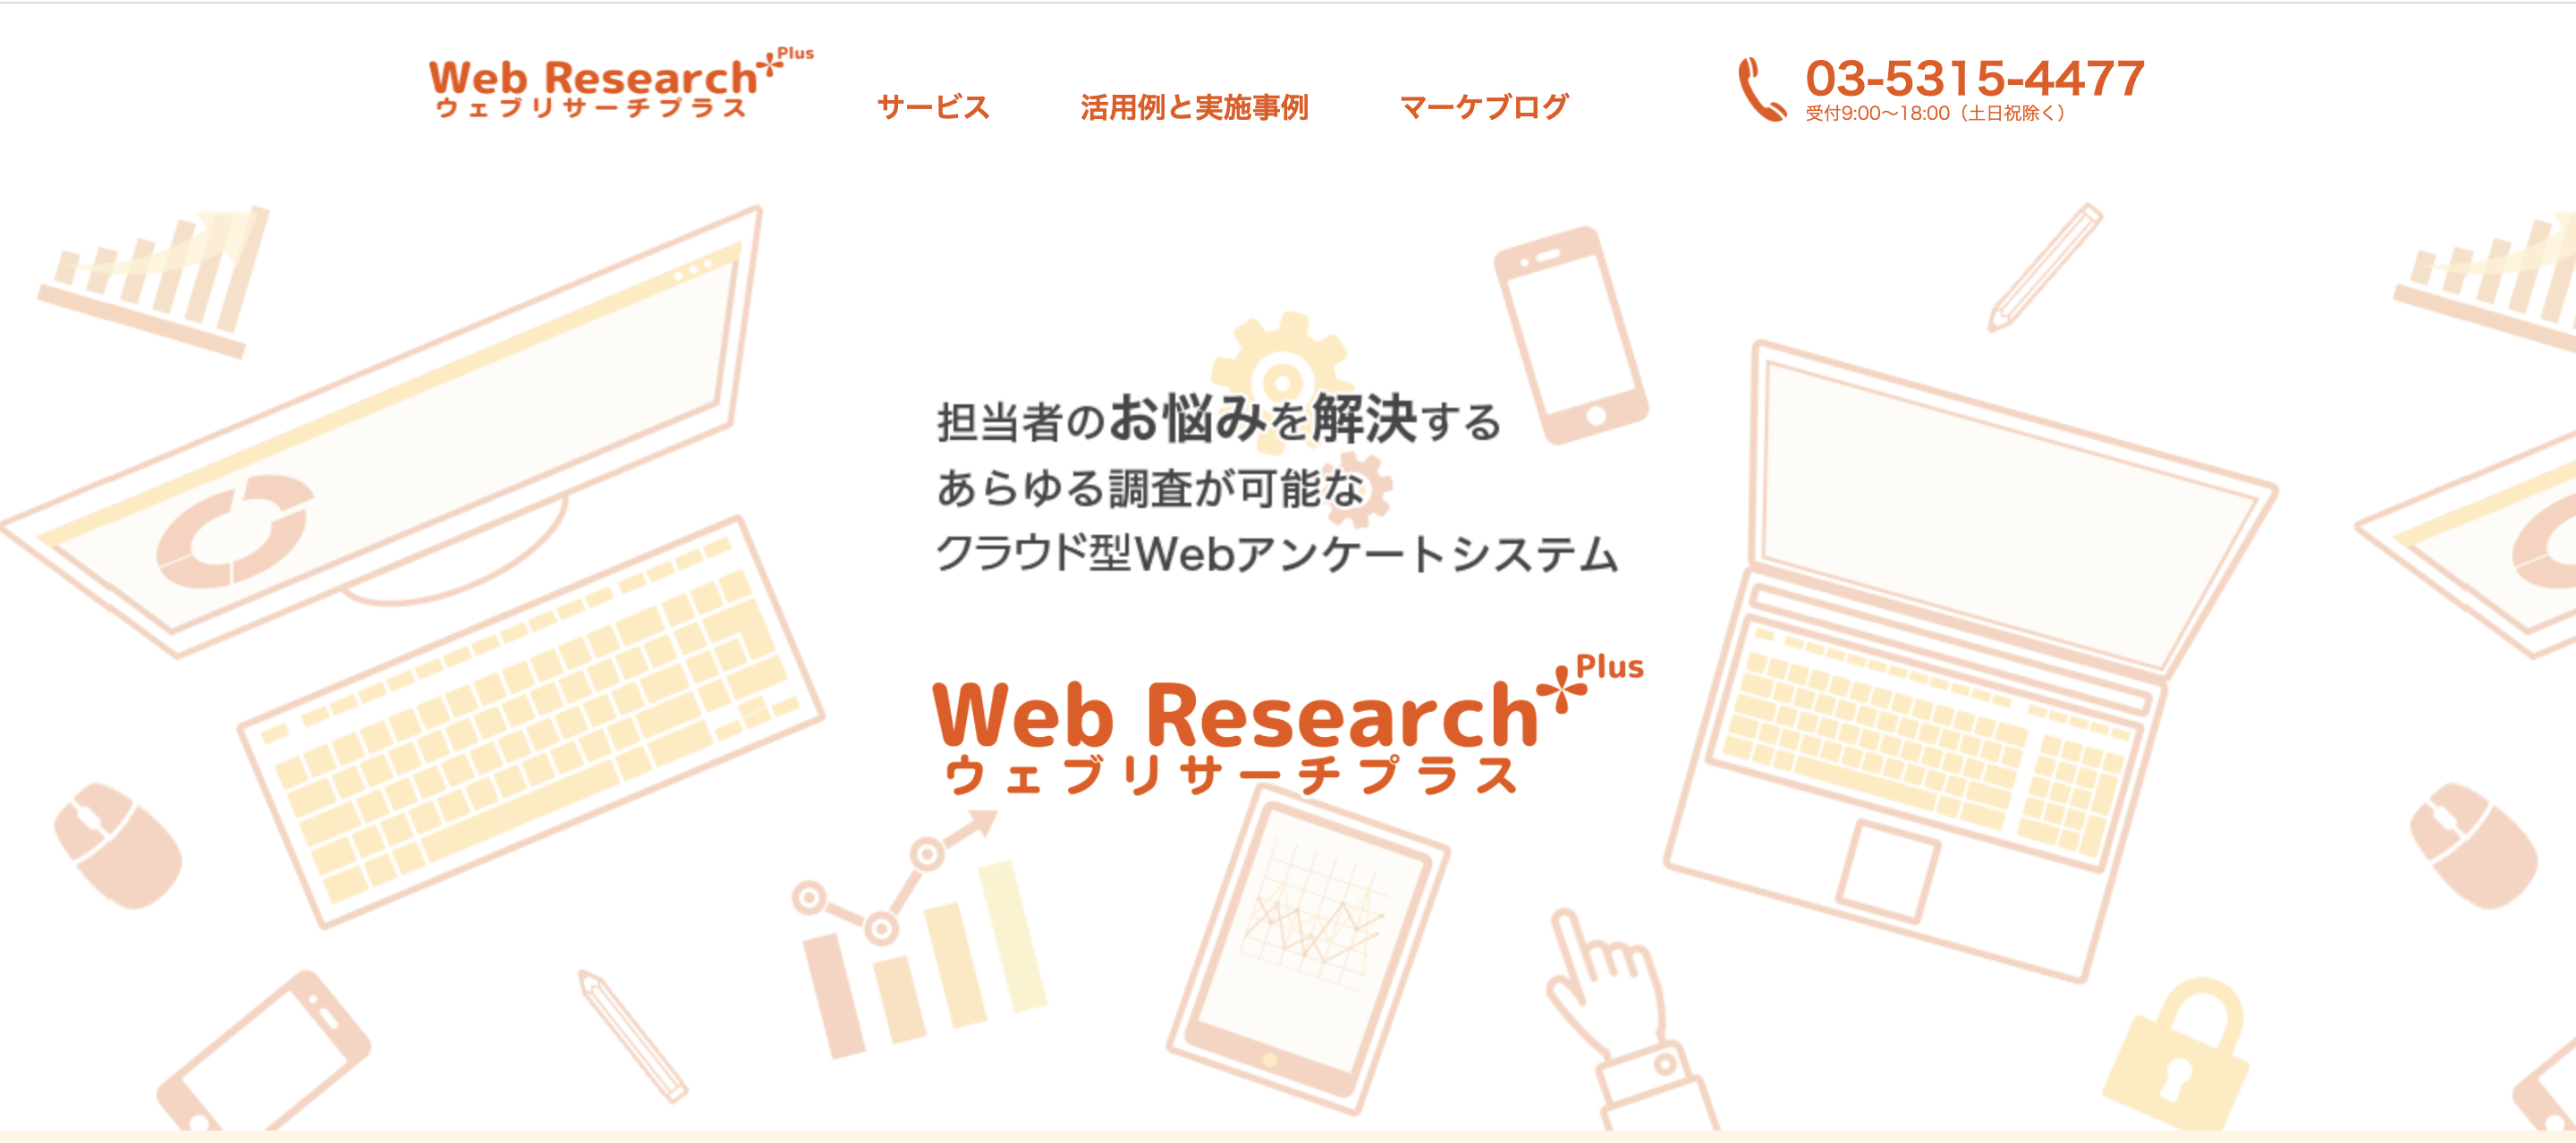 Web Research Plus